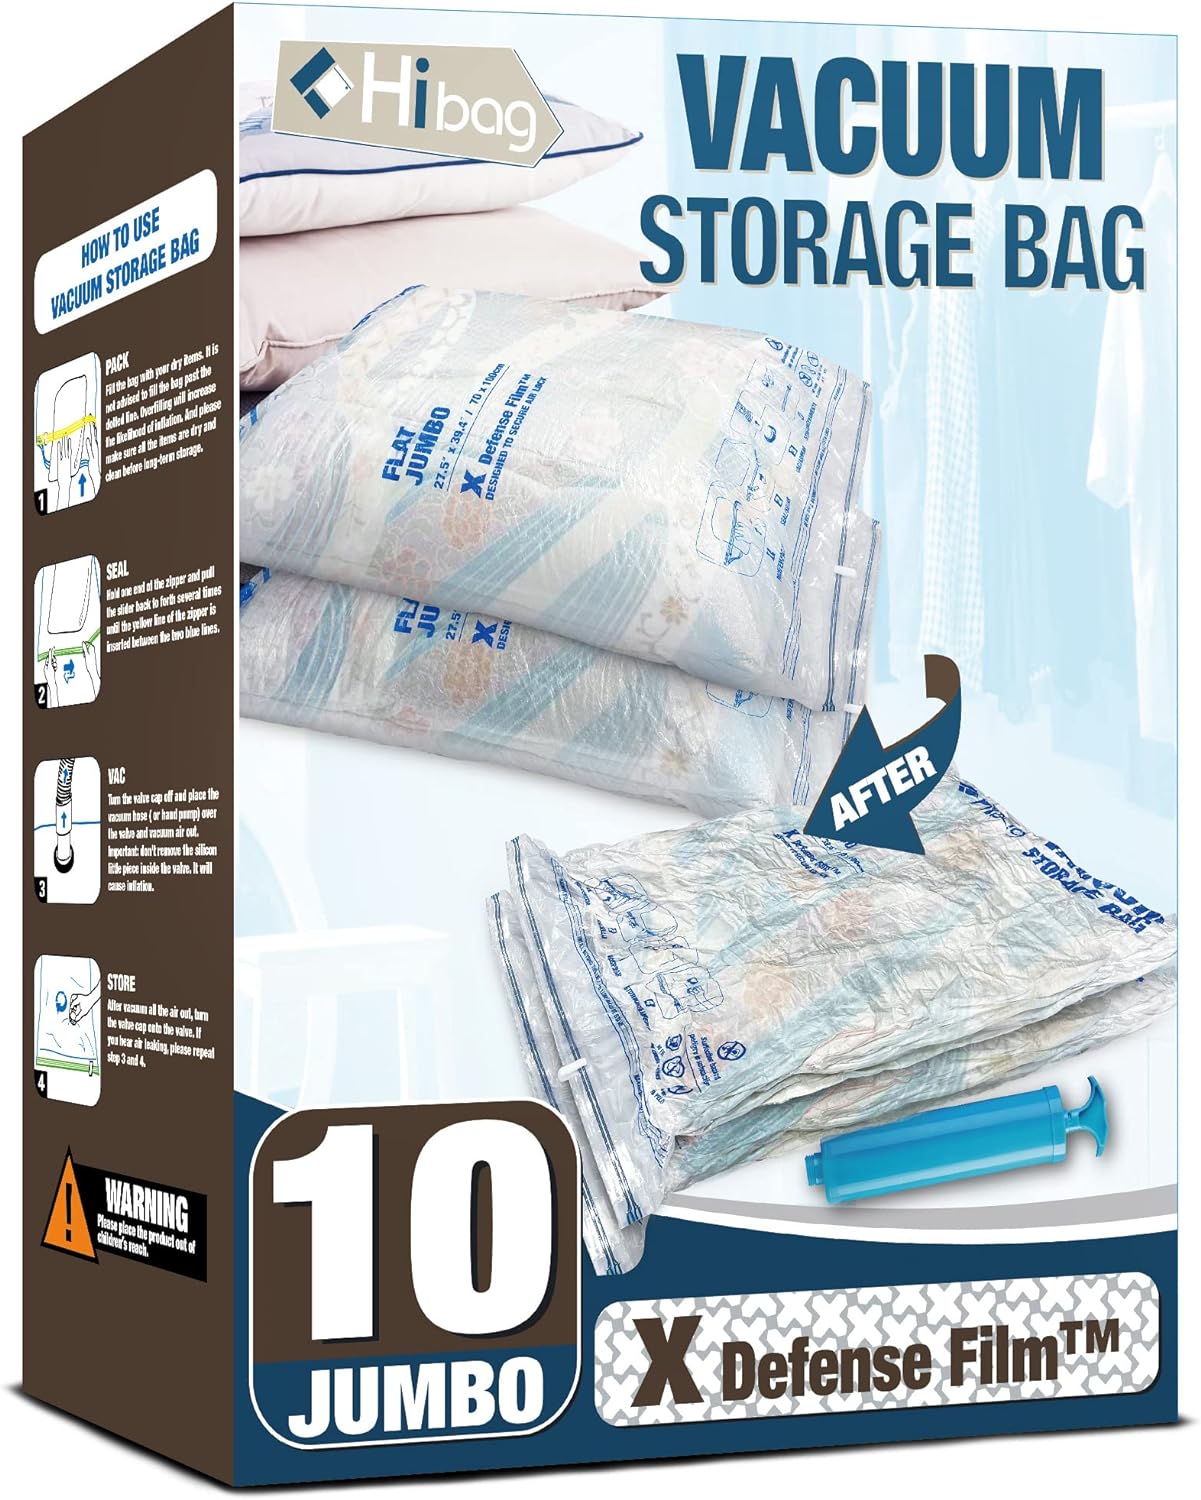 Vacuum Storage Bags, 10 Jumbo Space Saver Vacuum Seal Bags, Space Bags, Vacuum Sealer Bags for Clothes, Comforters, Blankets, Bedding (10J)